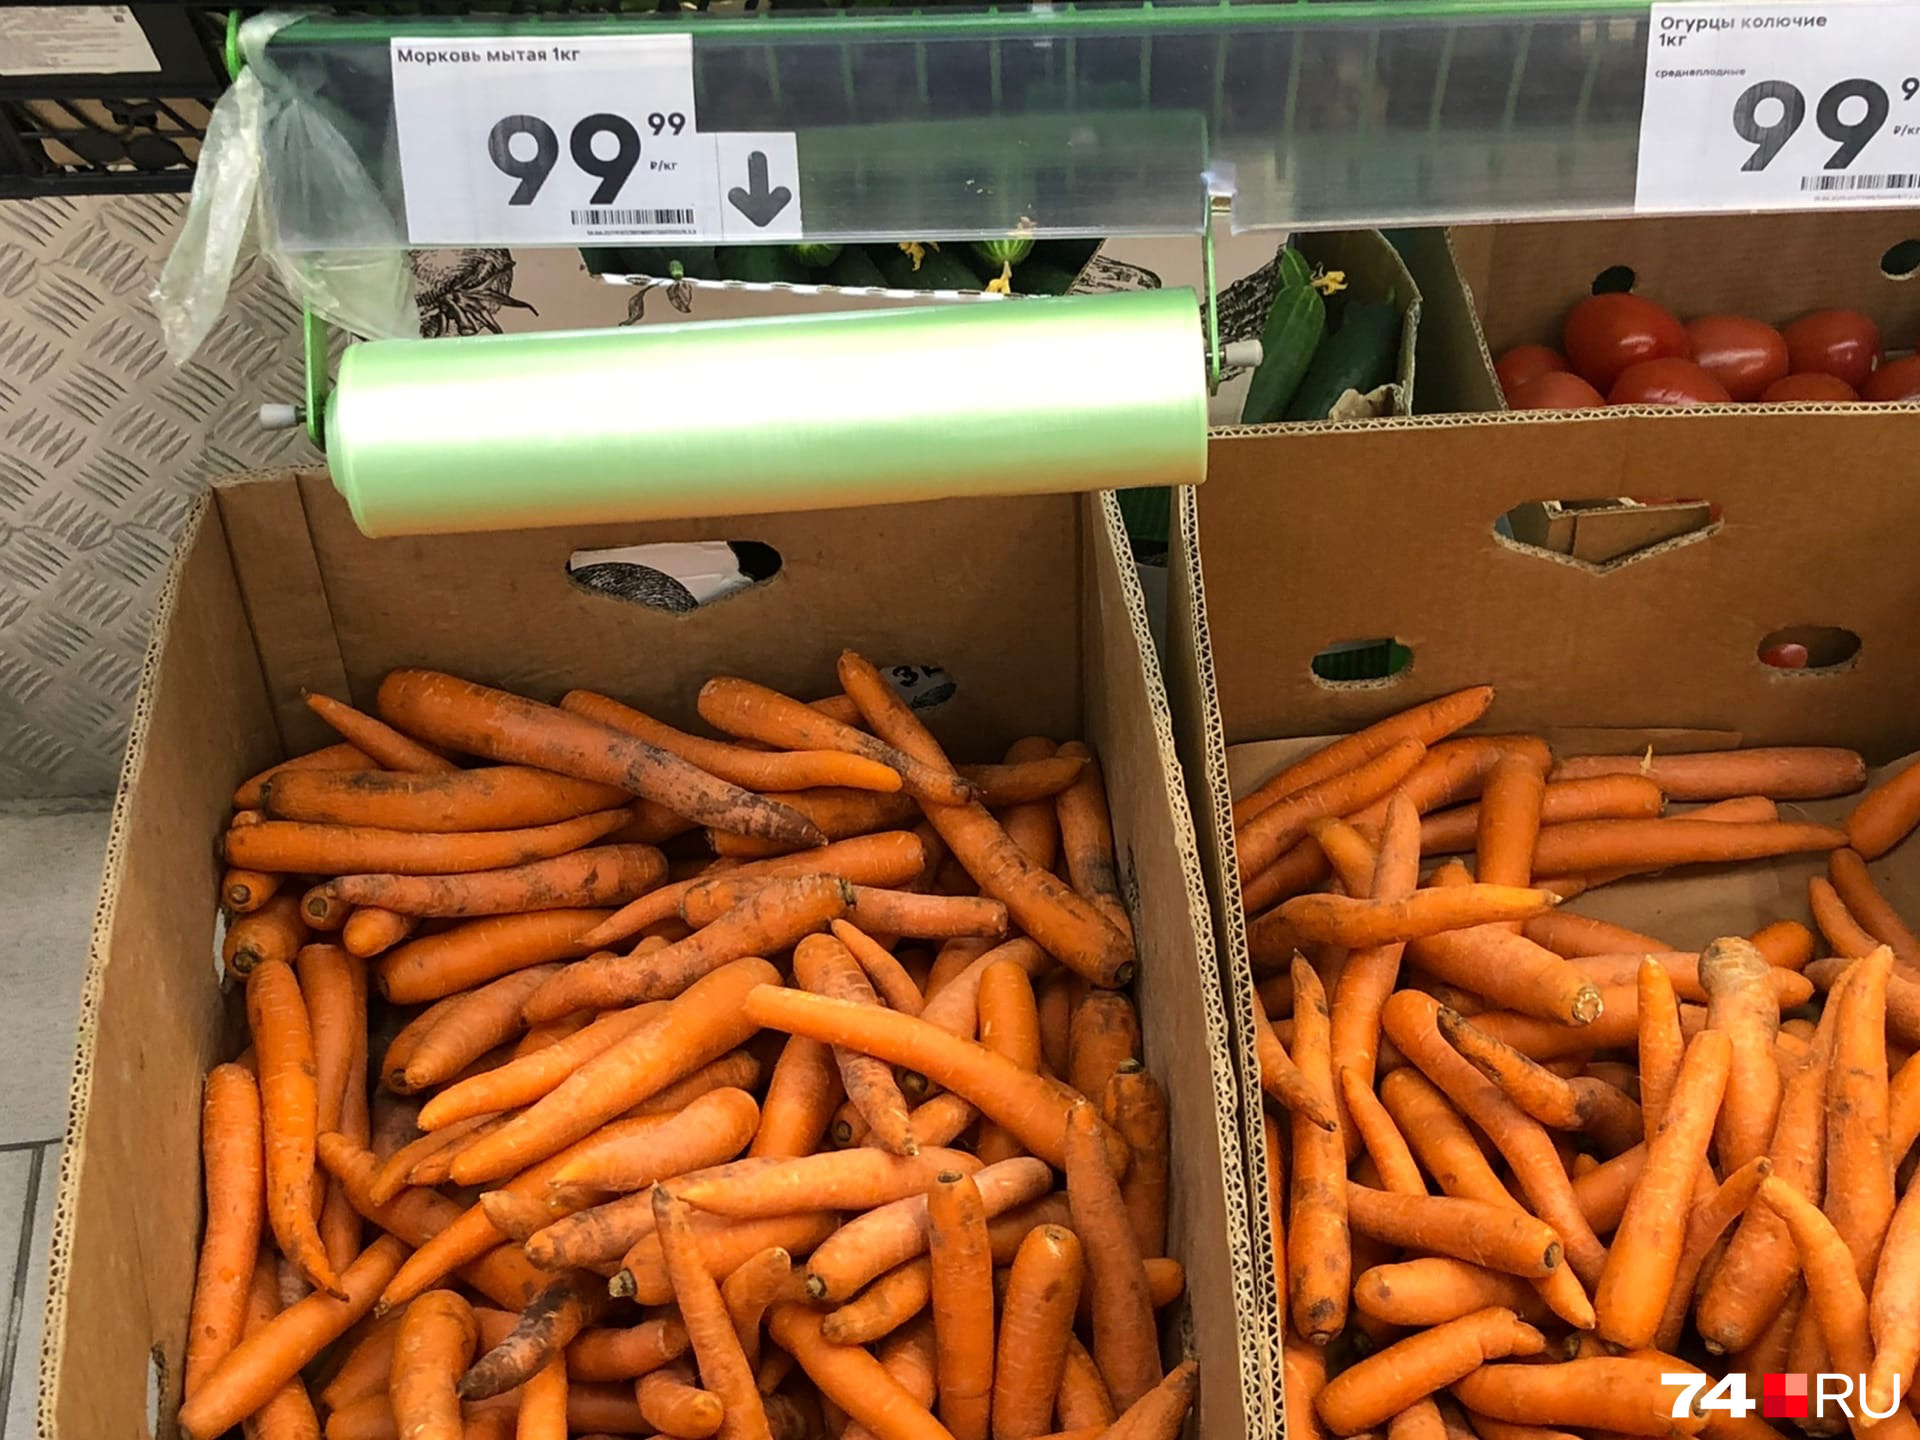 Раньше за сто рублей можно было купить три килограмма моркови, но сейчас в «Пятерочке», например, вот такие цены